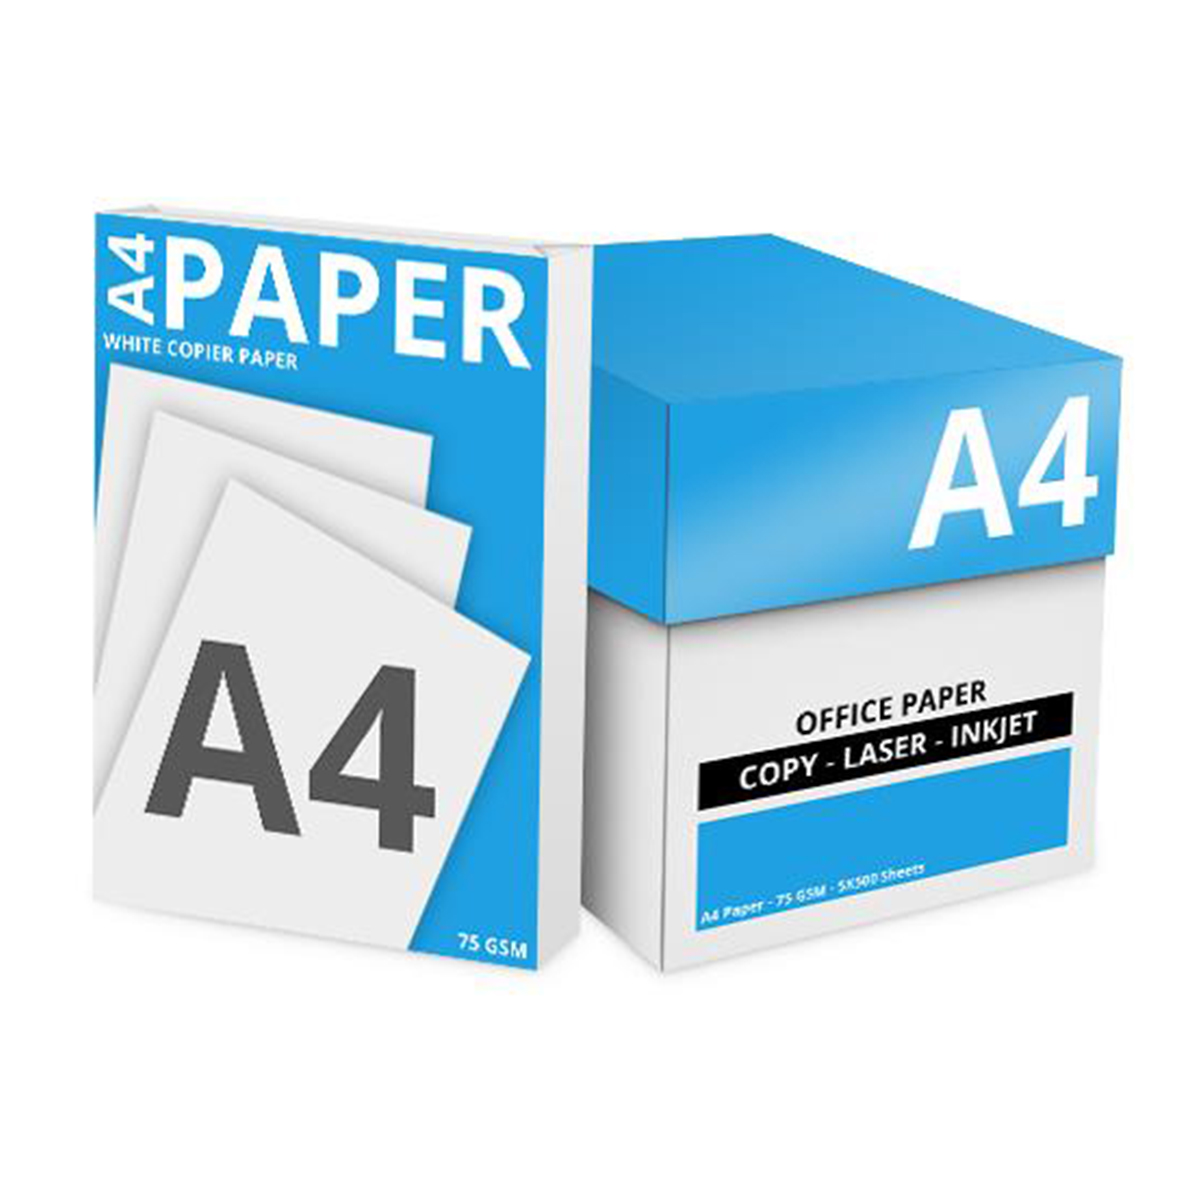 Стандартной бумаге. А4 бумага. Формат бумаги а1. Бумага офисная Double a, формата а3. Офсетная бумага 80 г/м2.